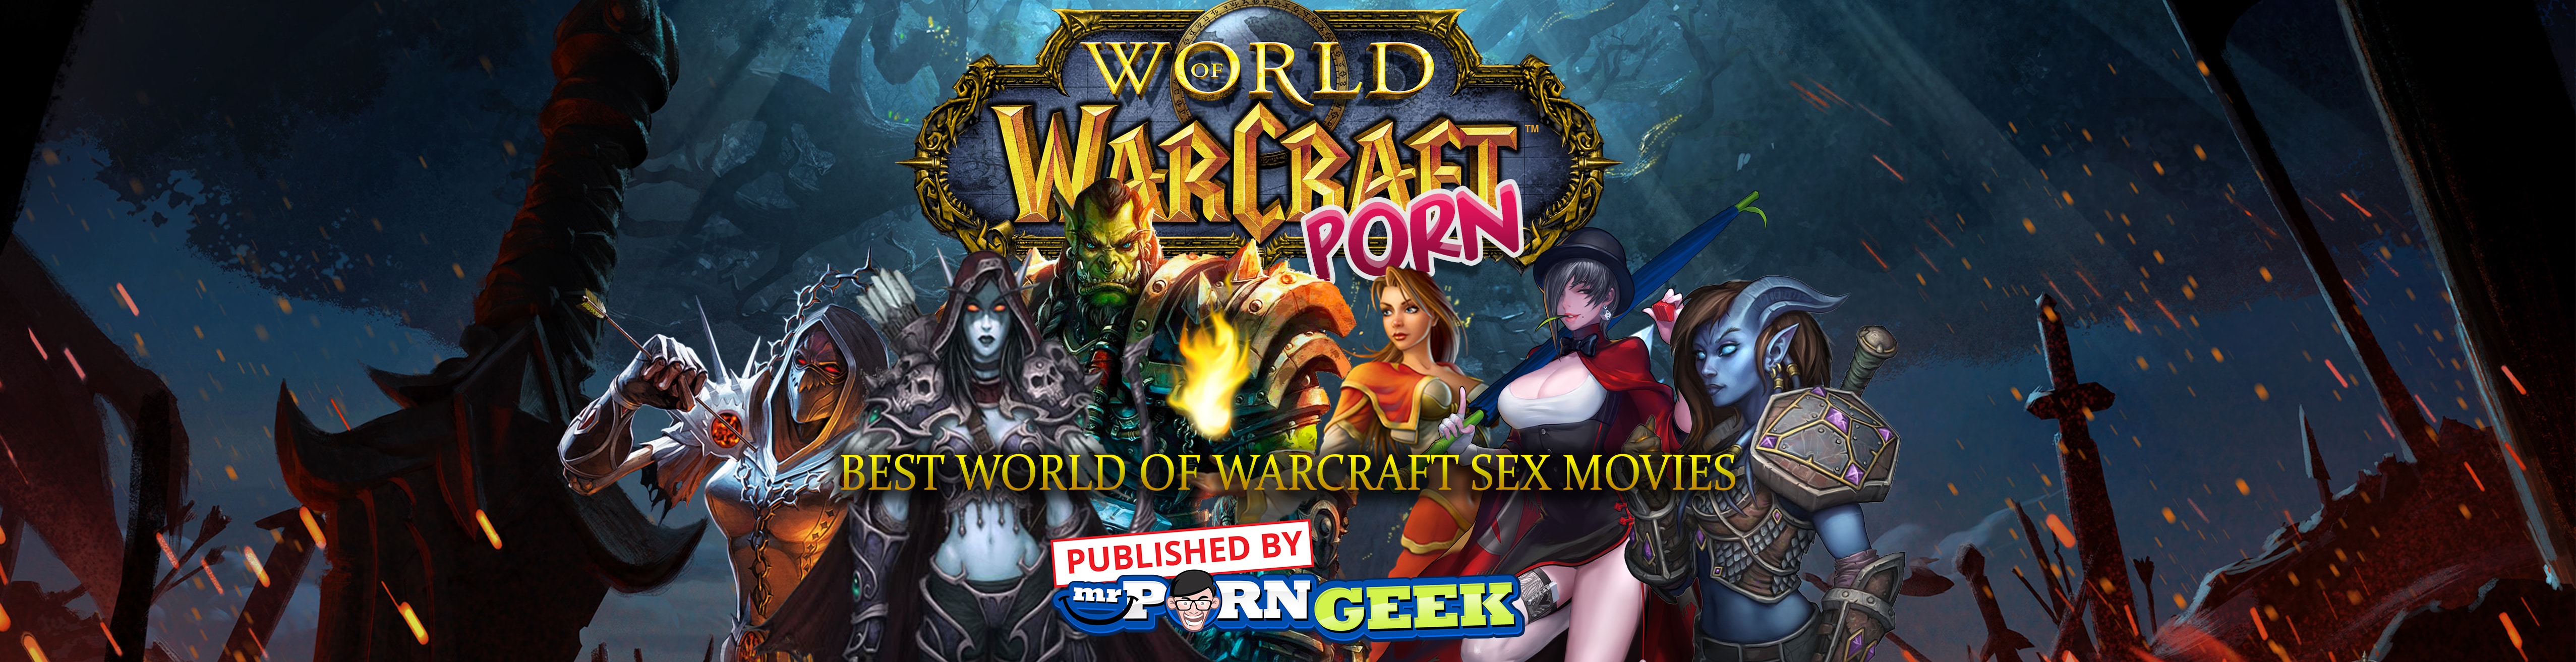 World Of Warcraft Gangbang Porn - WoW Porn: Best World Of Warcraft Sex Movies â€“ Mr. Porn Geek